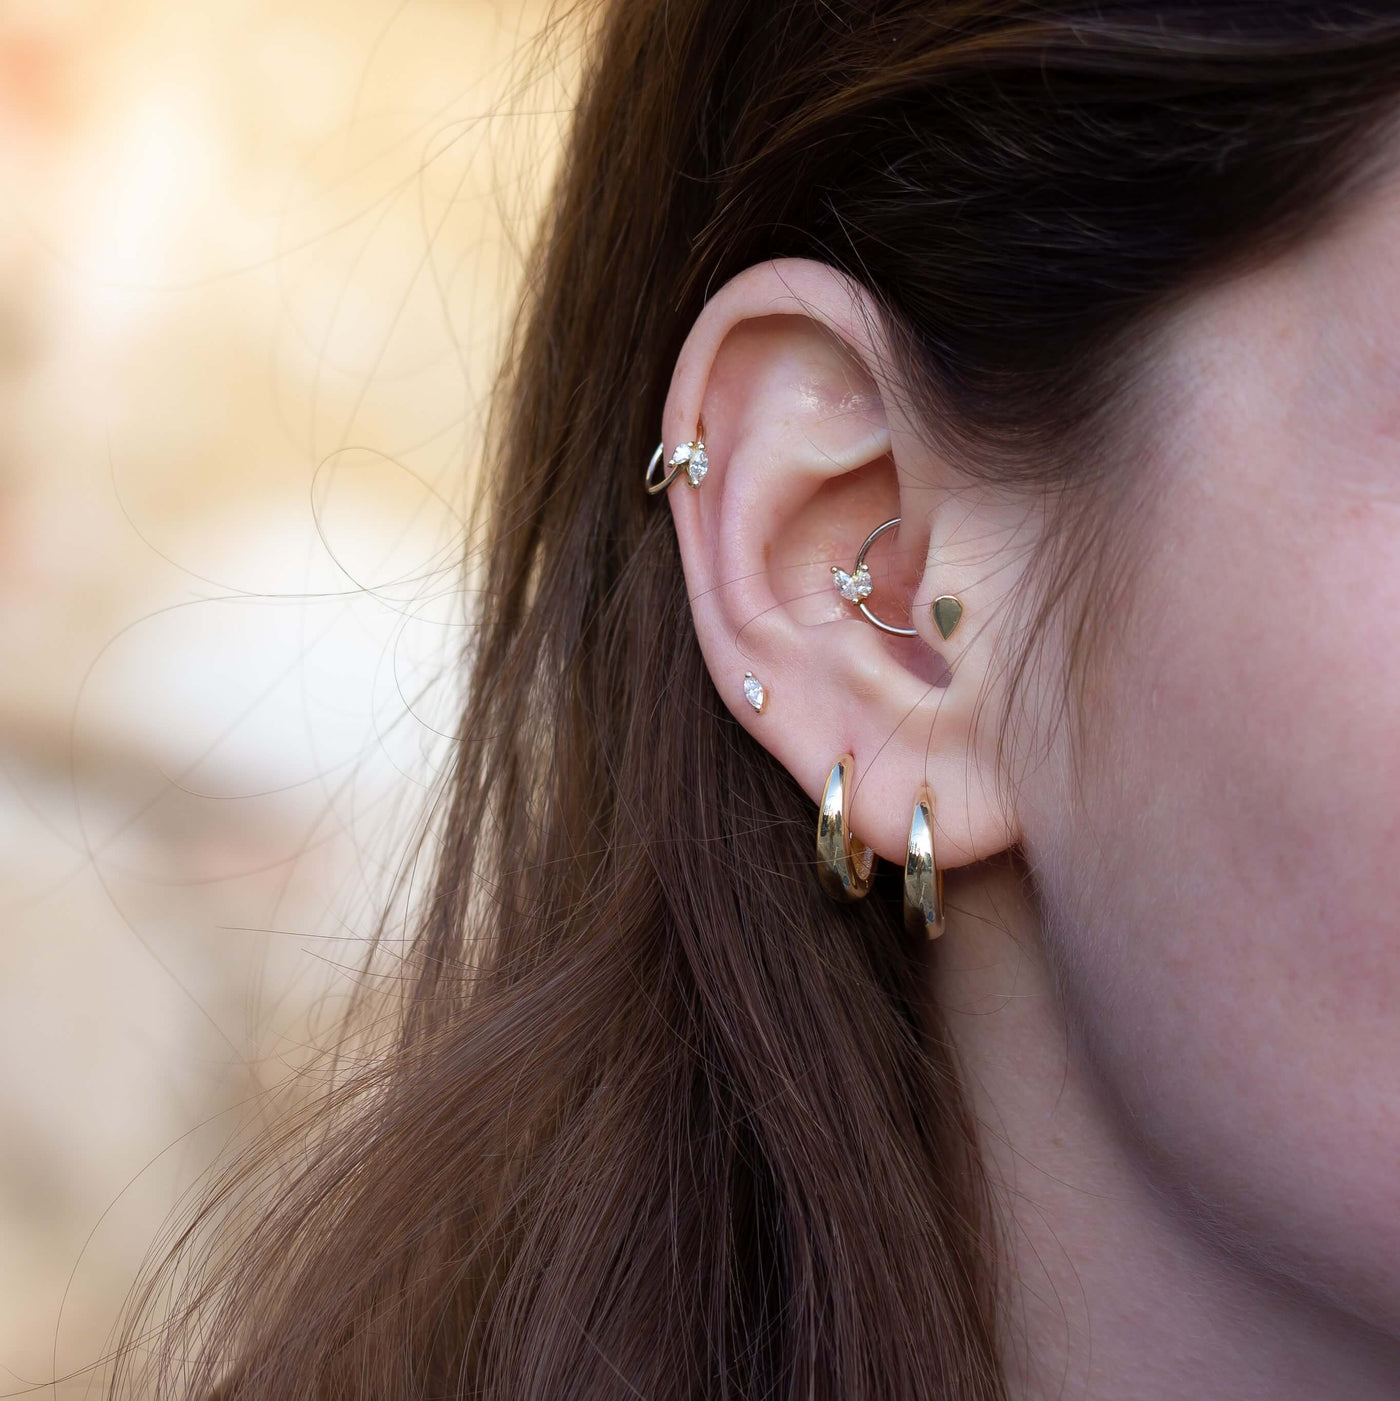 Kourtney Hoop Earring 14K Gold Earrings 